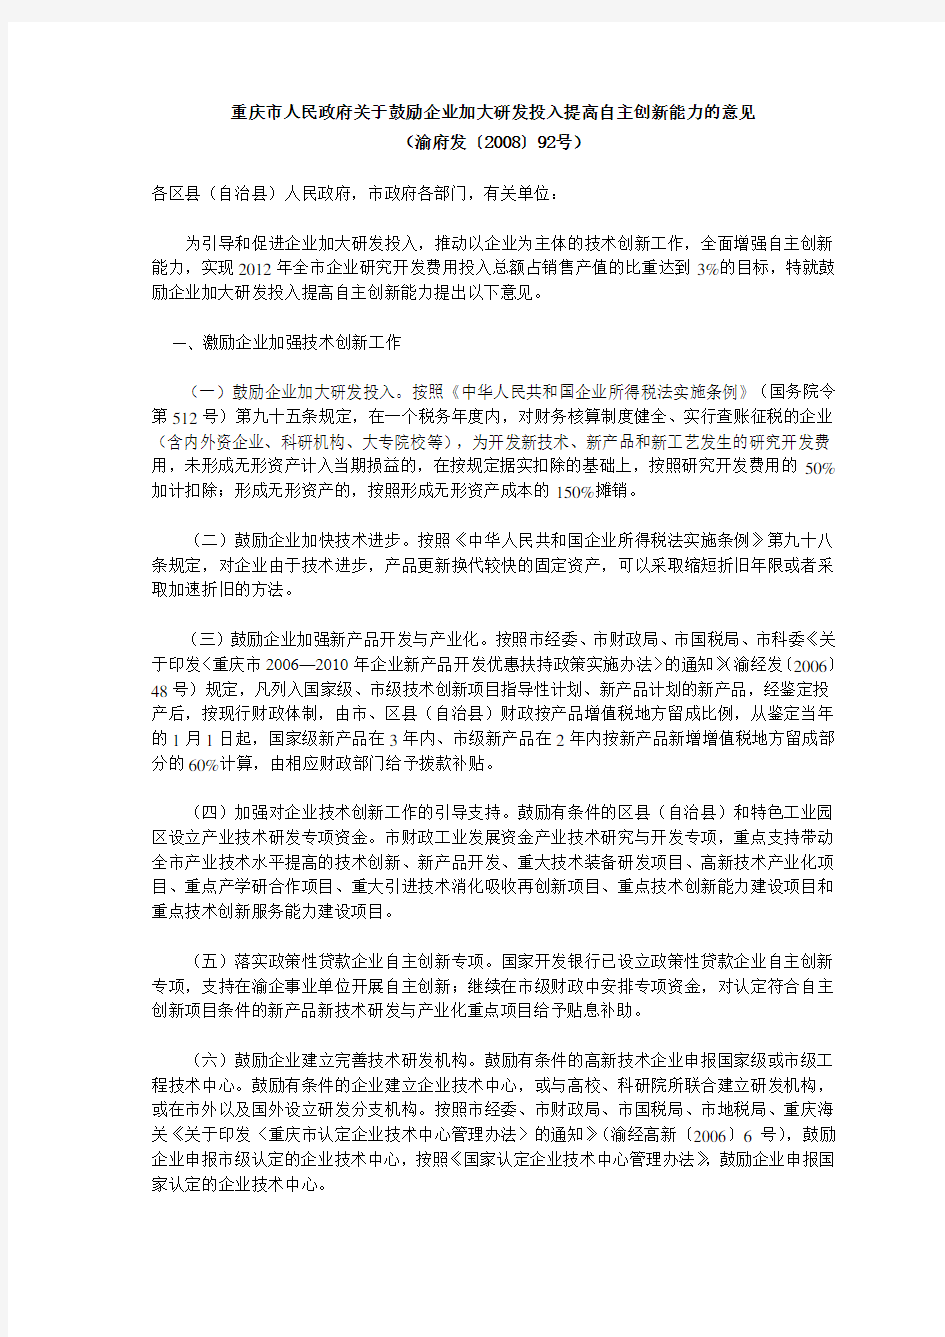 重庆市人民政府关于鼓励企业加大研发投入提高自主创新能力的意见